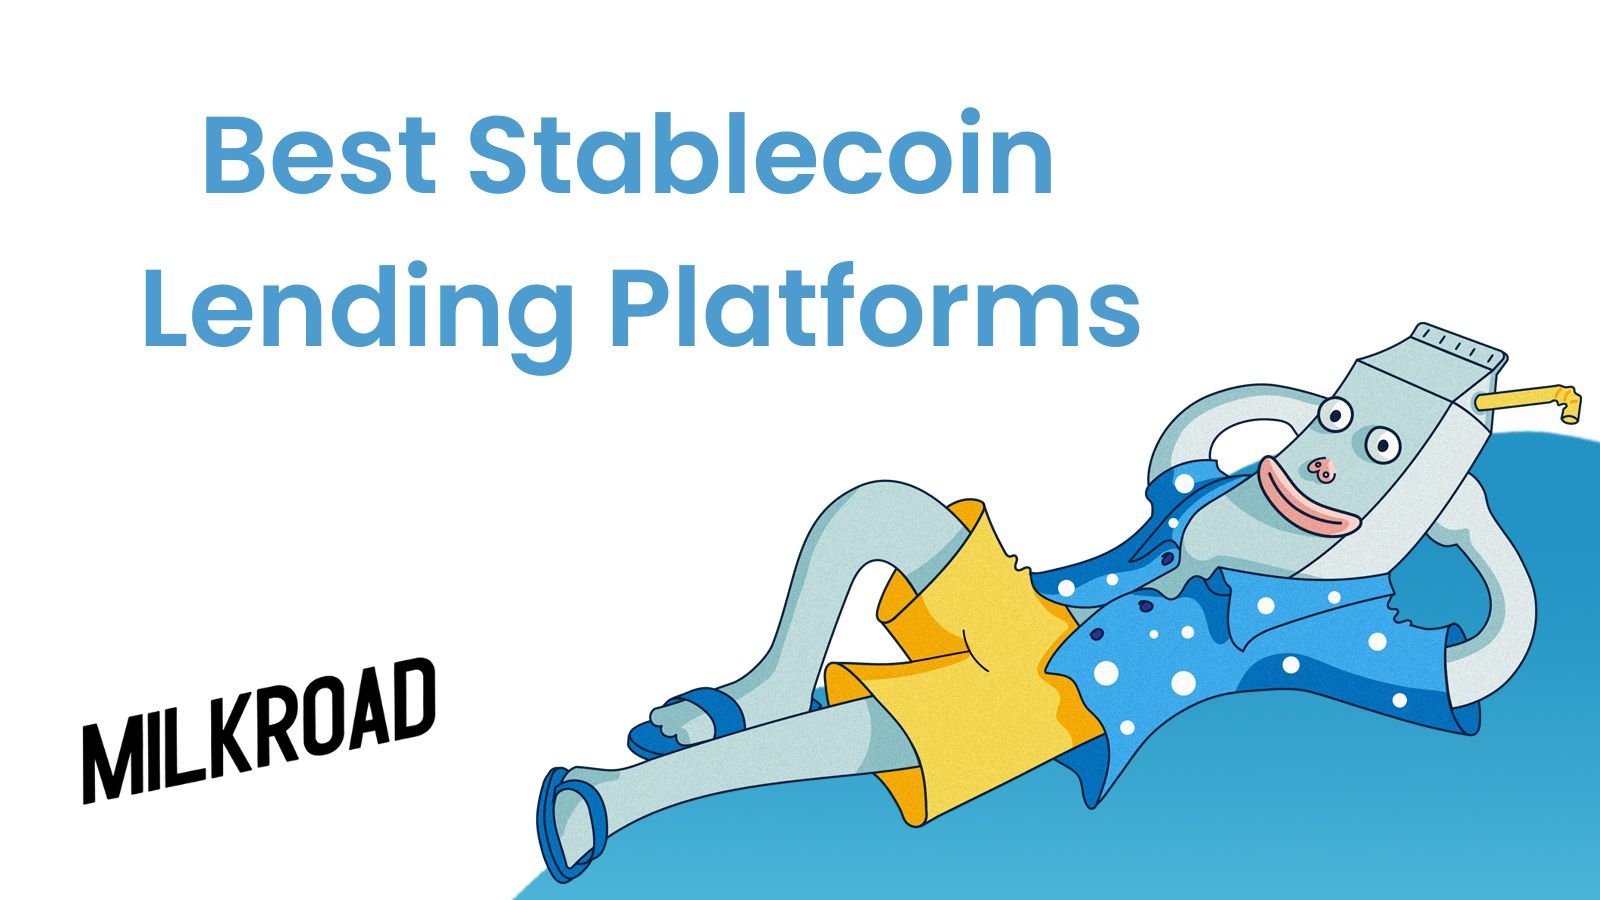 Best Stablecoin Lending Platforms